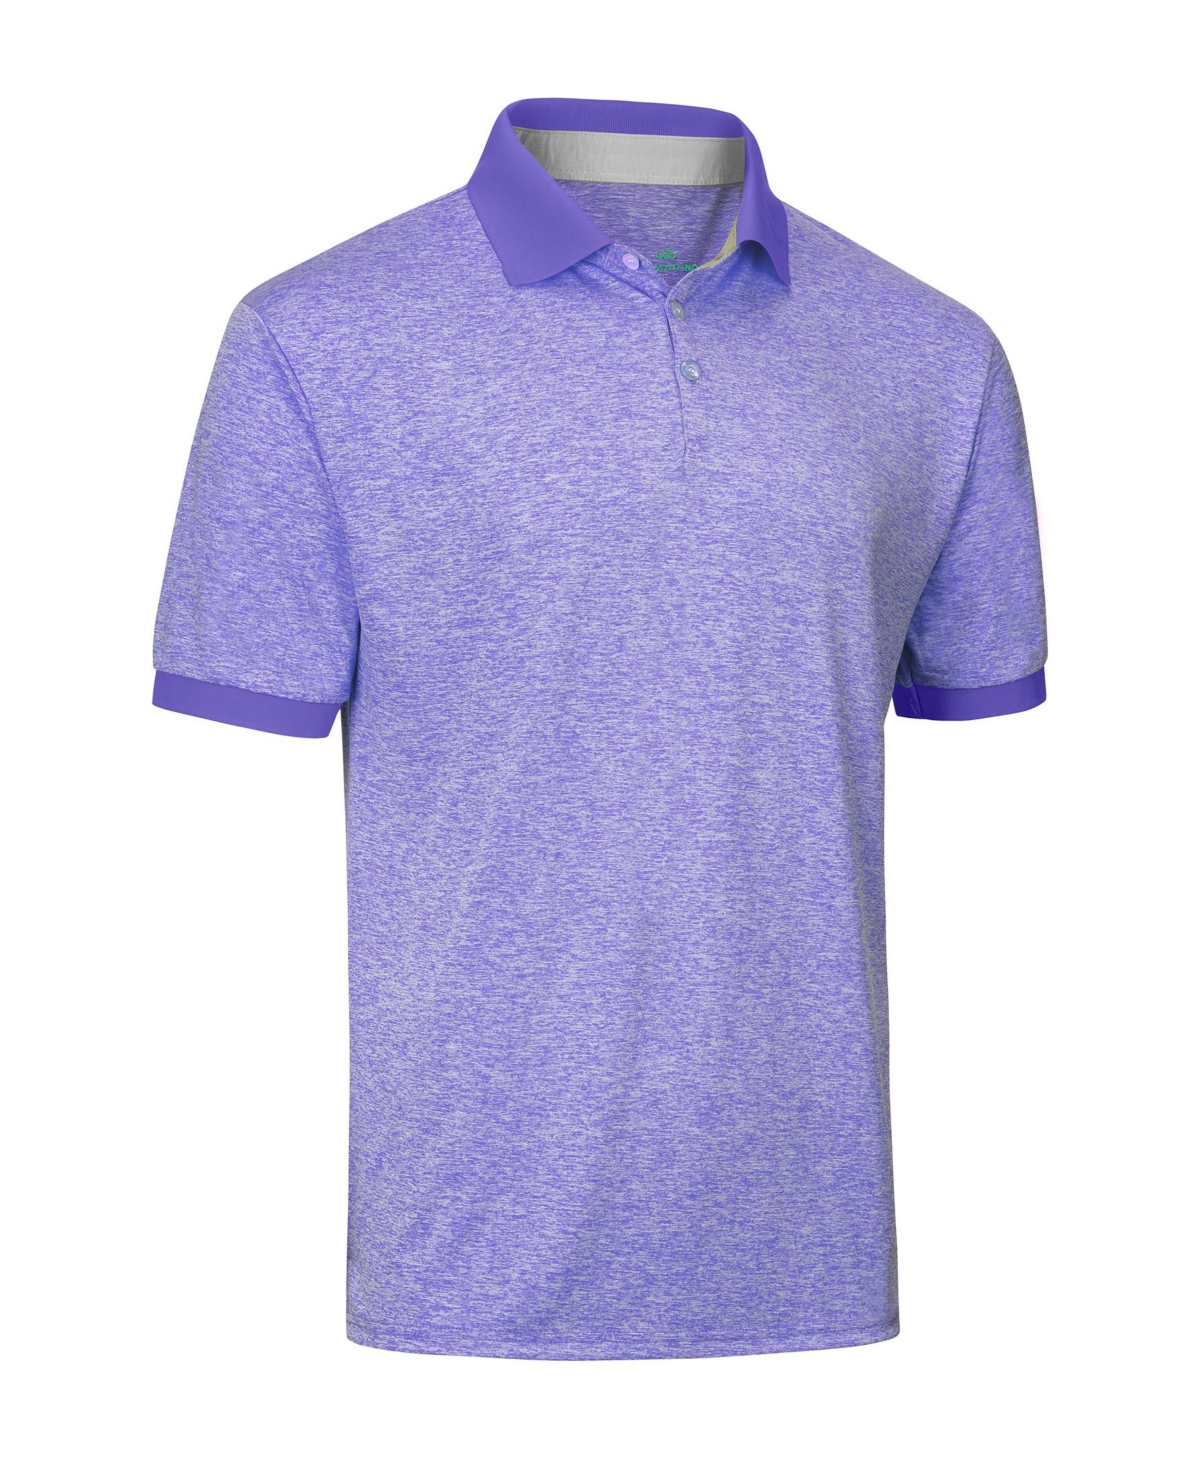 Men's Designer Golf Polo Shirt - Sky blue